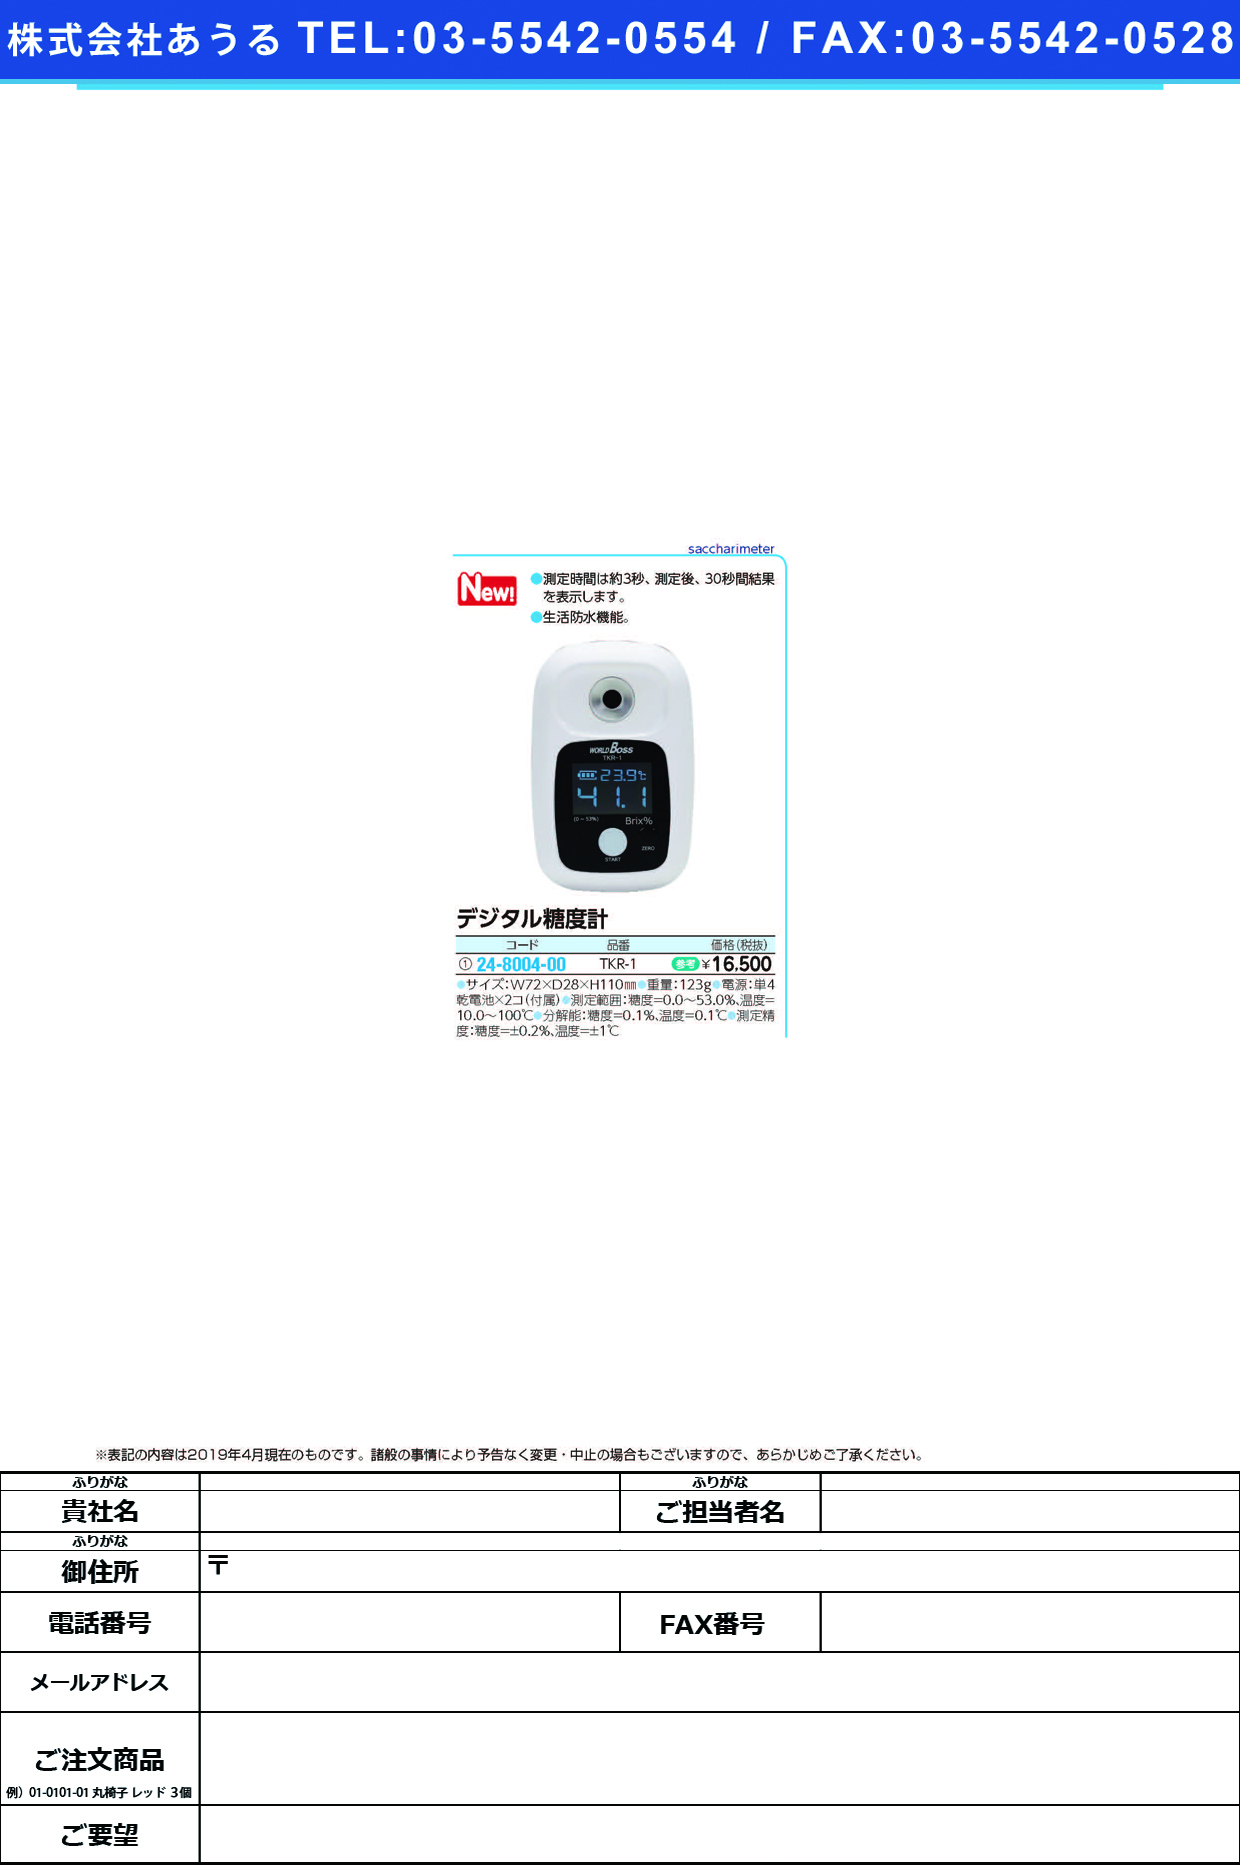 (24-8004-00)デジタル糖度計TKR-1 ﾃﾞｼﾞﾀﾙﾄｳﾄﾞｹｲ(髙森コーキ)【1台単位】【2019年カタログ商品】